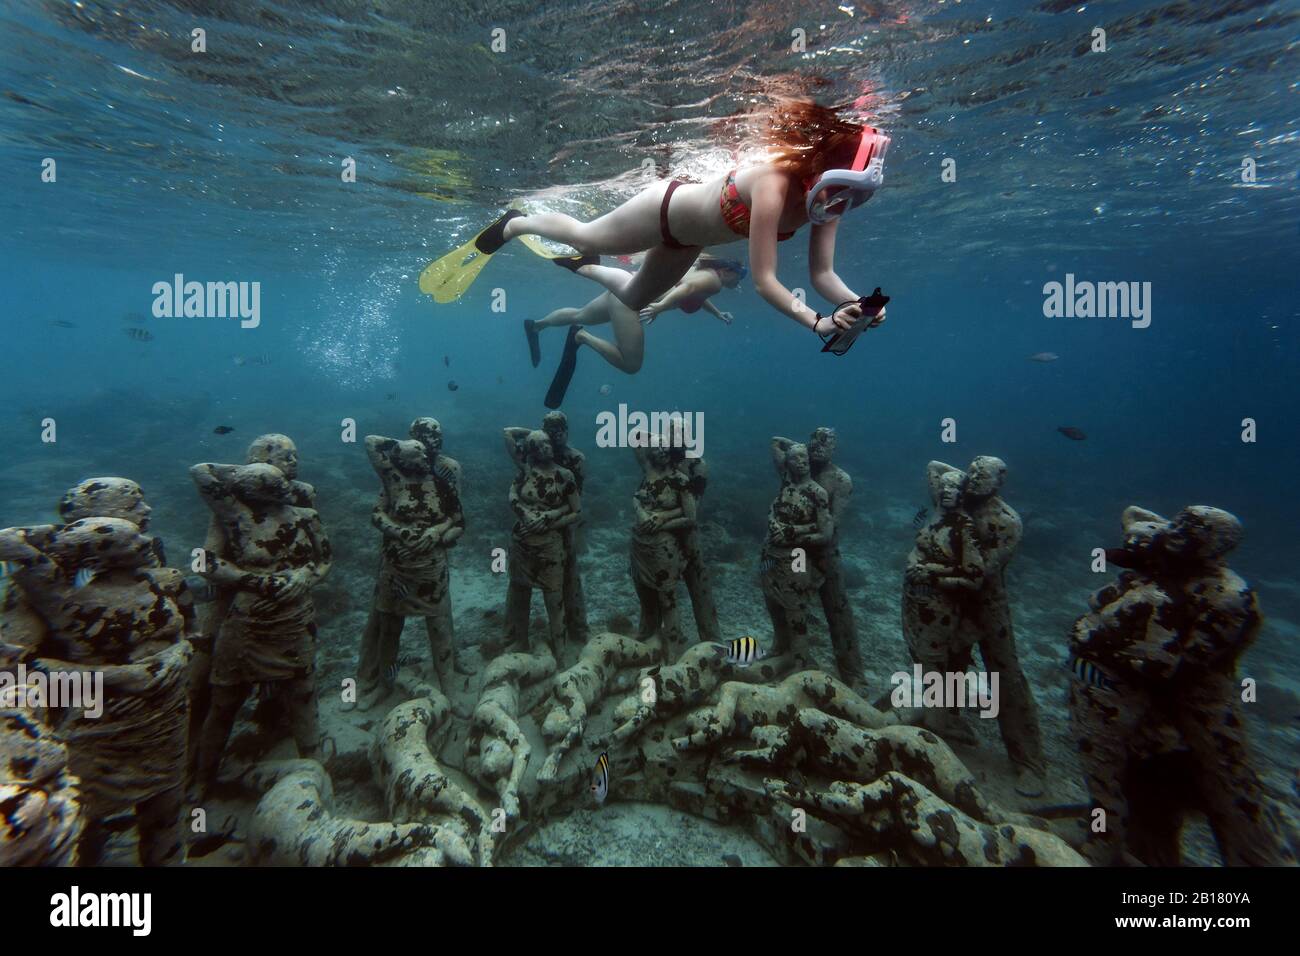 Frauen schwimmen in der Nähe von Unterwasser-Skulpturen von Jason deCaires Taylor, Gili Meno Insel, Bali, Indonesien Stockfoto